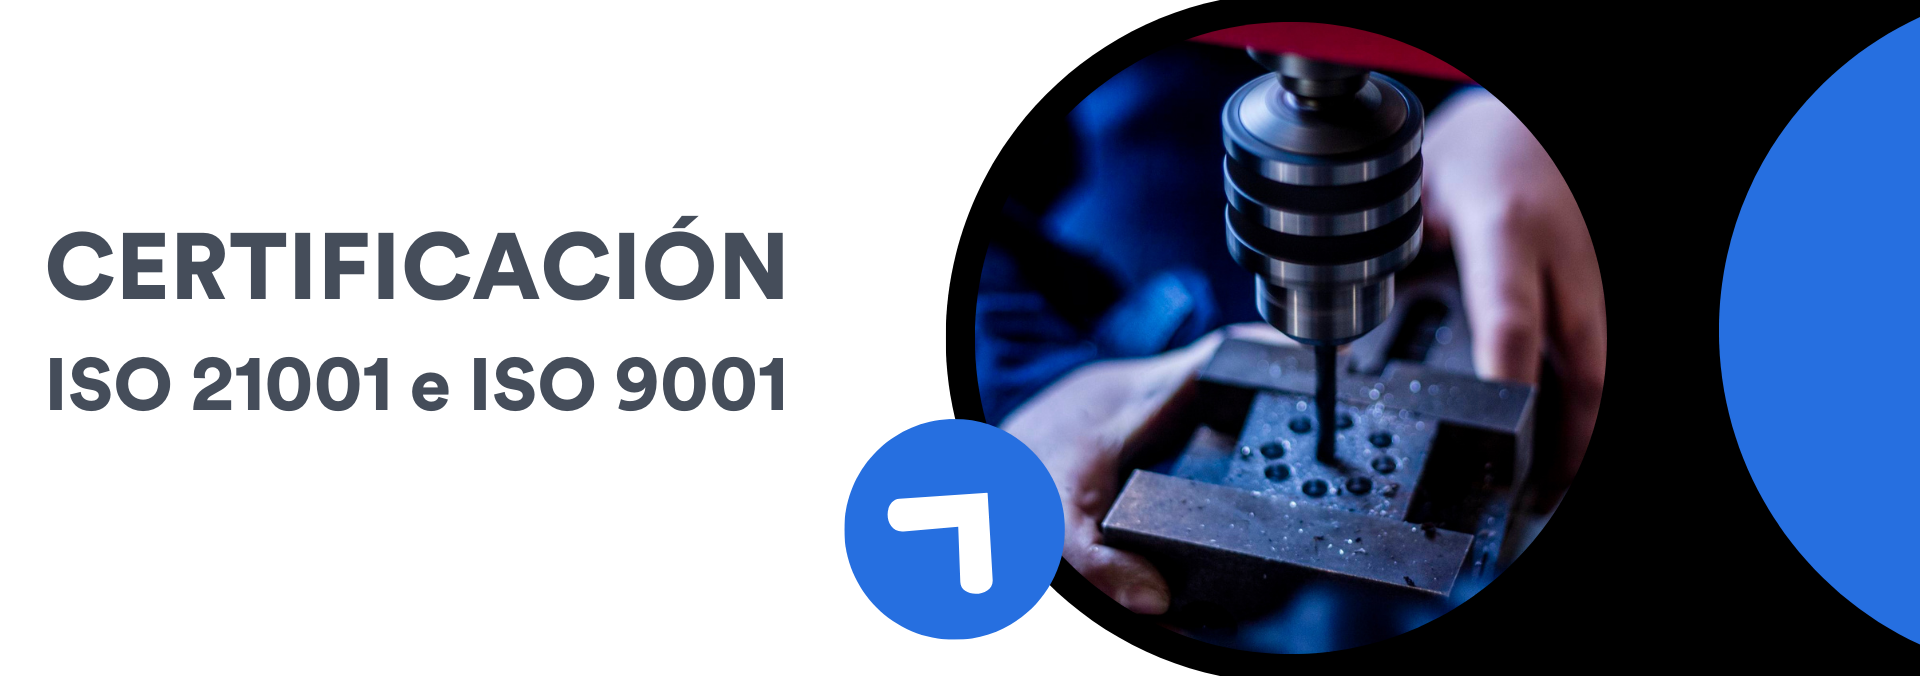 Certificación ISO 9001-21001